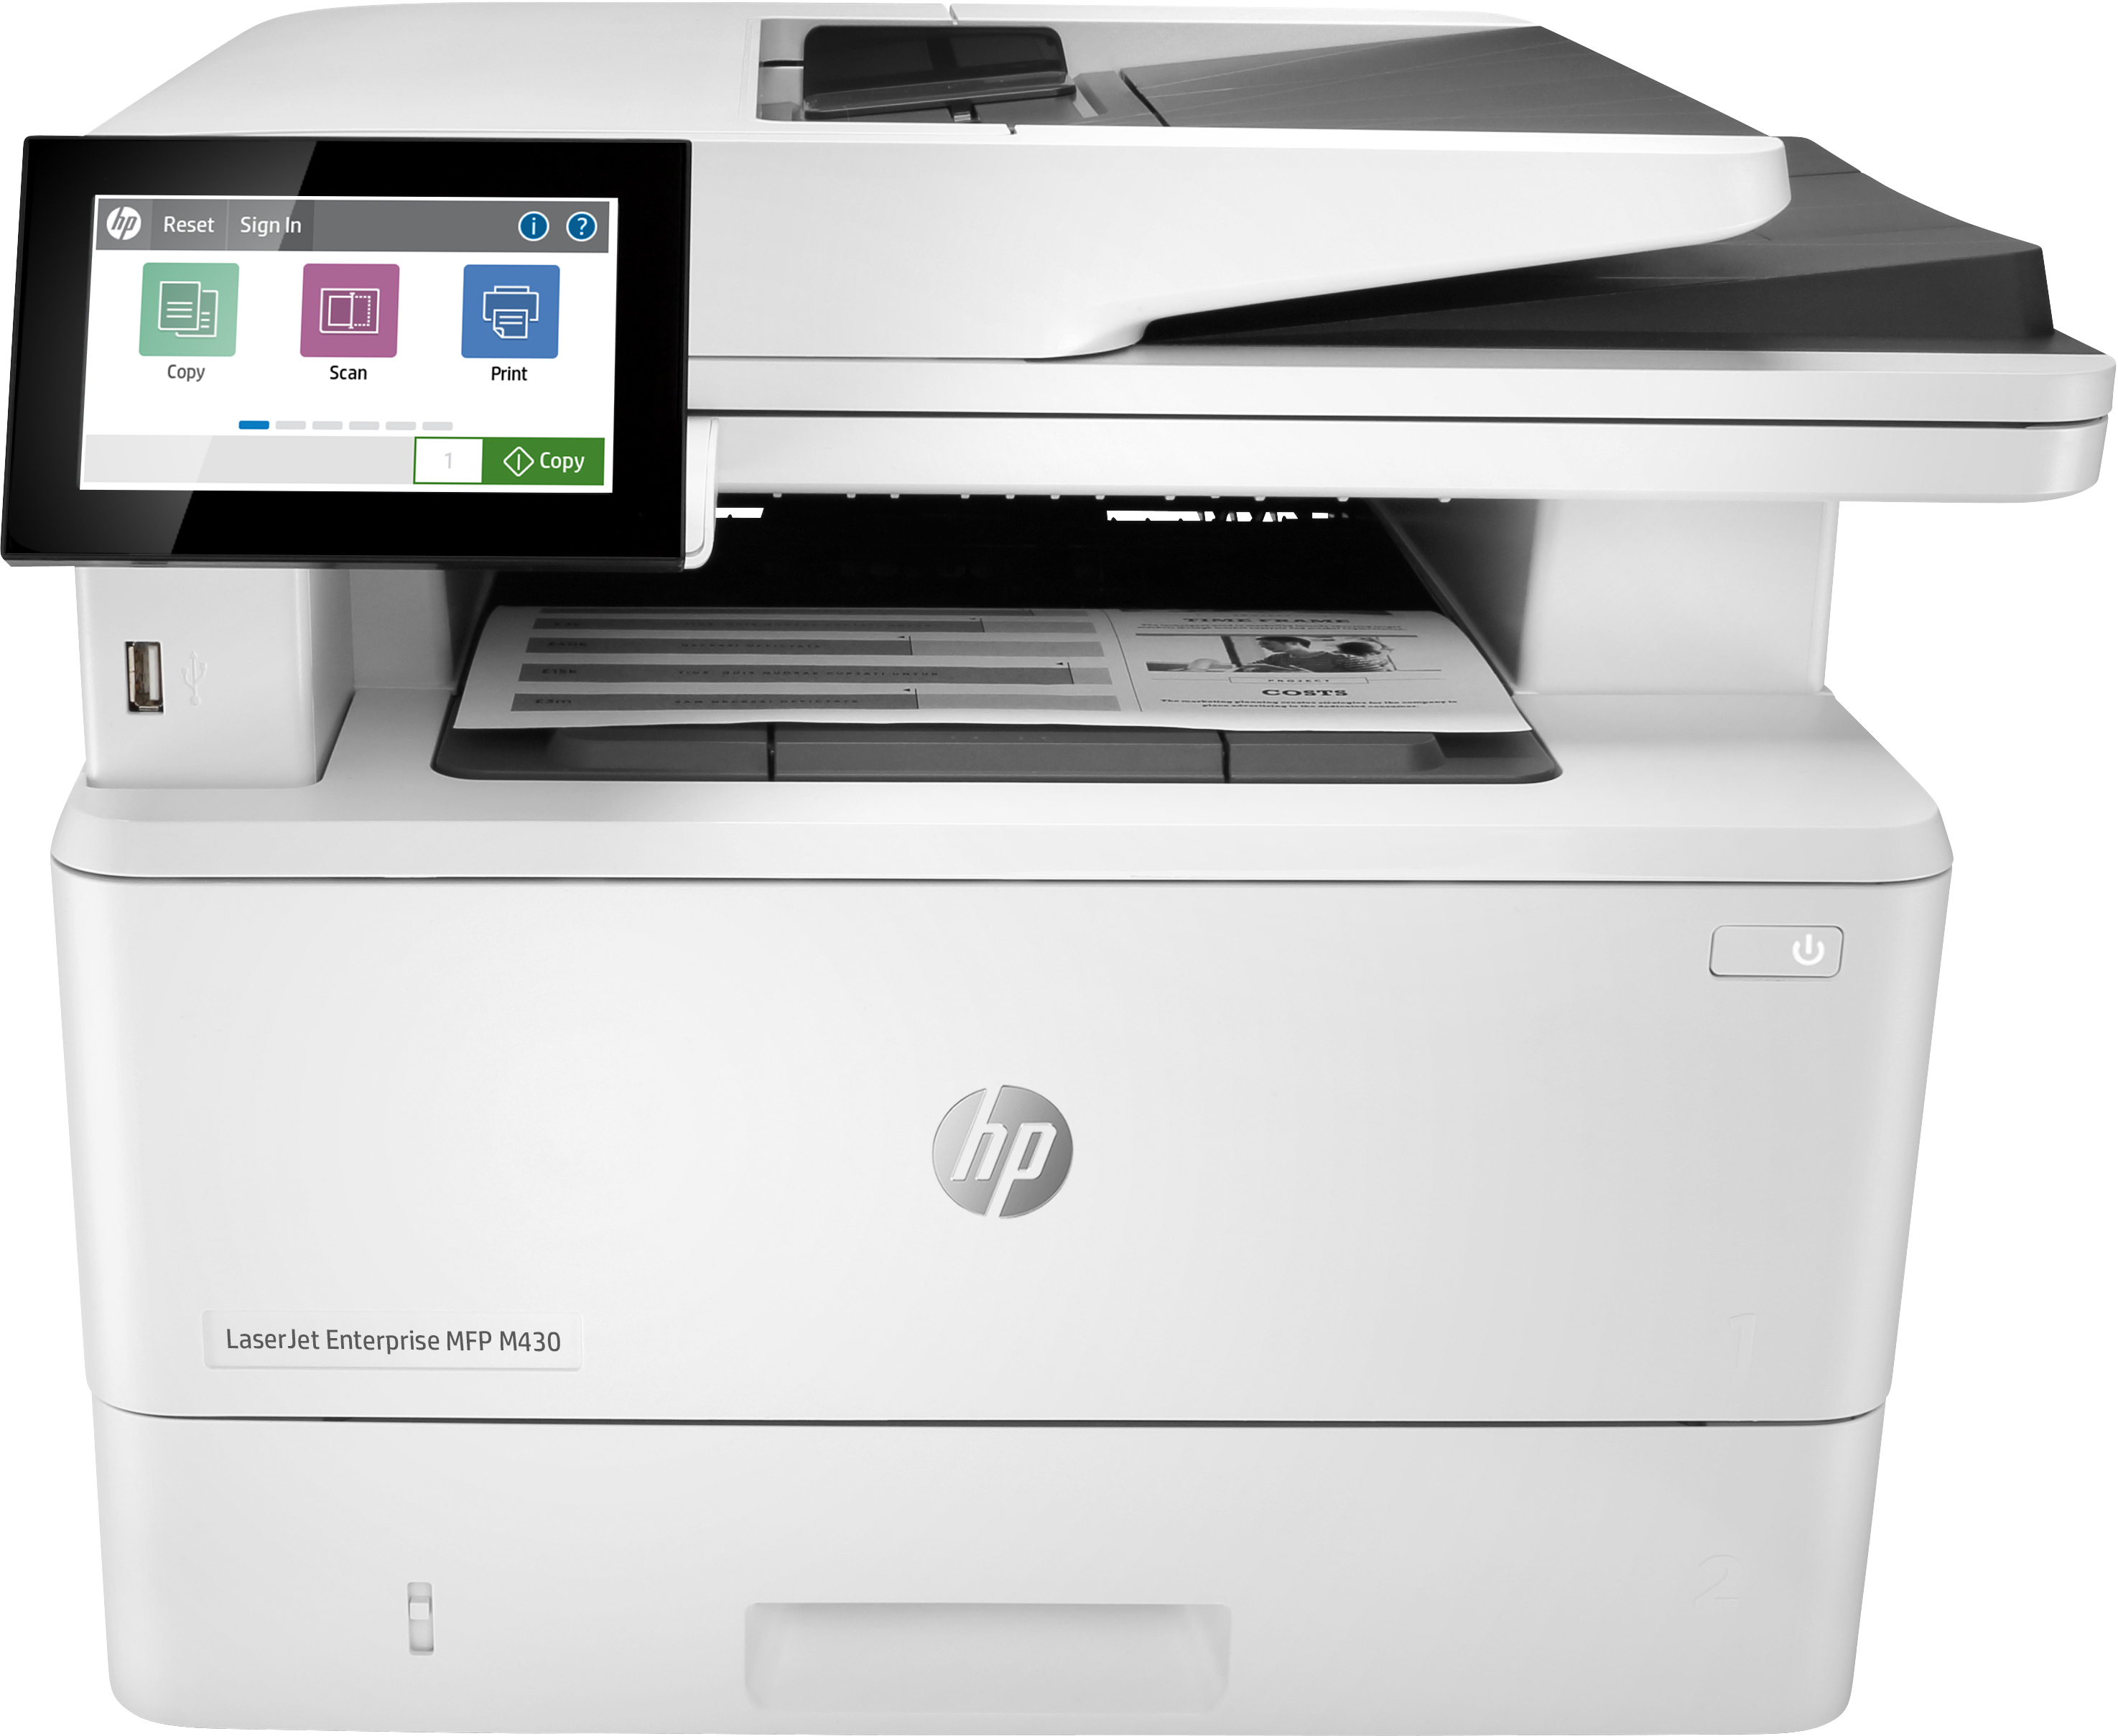 HP HP LaserJet Enterprise MFP M430f, Zwart-wit, Printer voor Bedrijf, Printen, kopi&#235;ren, scannen, faxen, Automatische documentinvoer voor 50 vellen; Dubbelzijdig printen; Dubbelzijdig scannen; Printen via USB-poort aan de voorzijde; Compact formaat; Energiezuinig; Optimale beveiliging